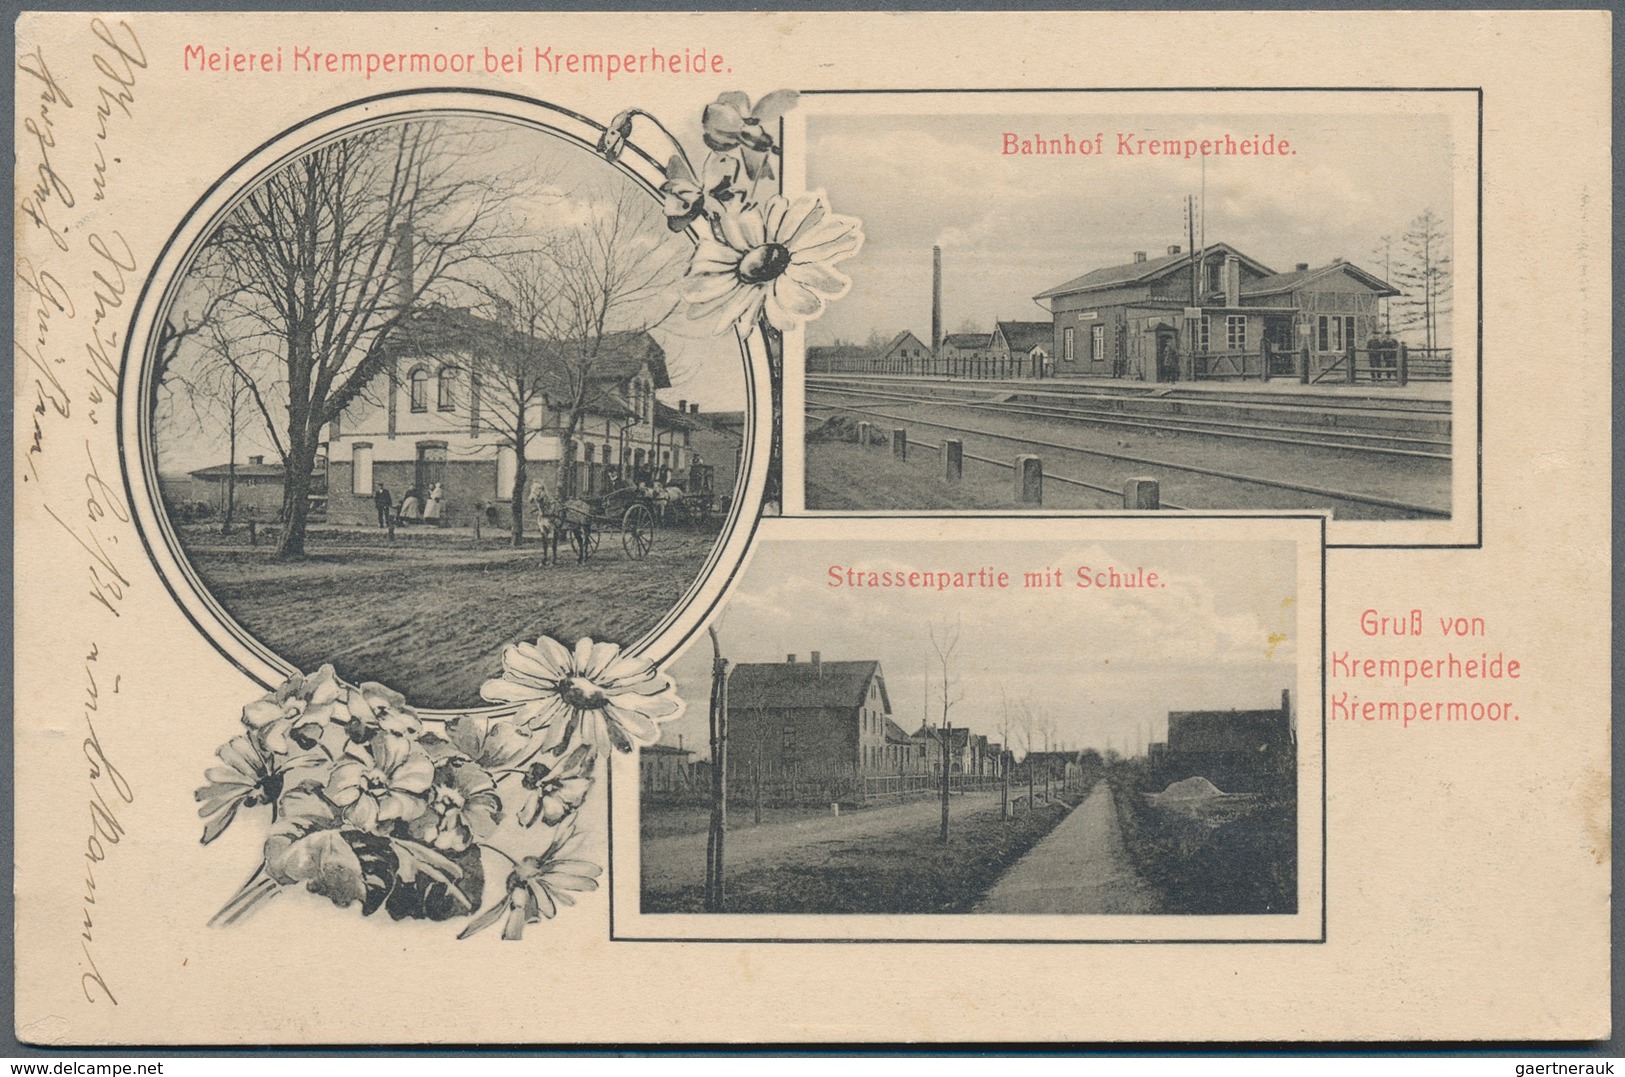 Ansichtskarten: Schleswig-Holstein: PRACHTPOSTEN, Schachtel mit gut 100 historischen Ansichtskarten